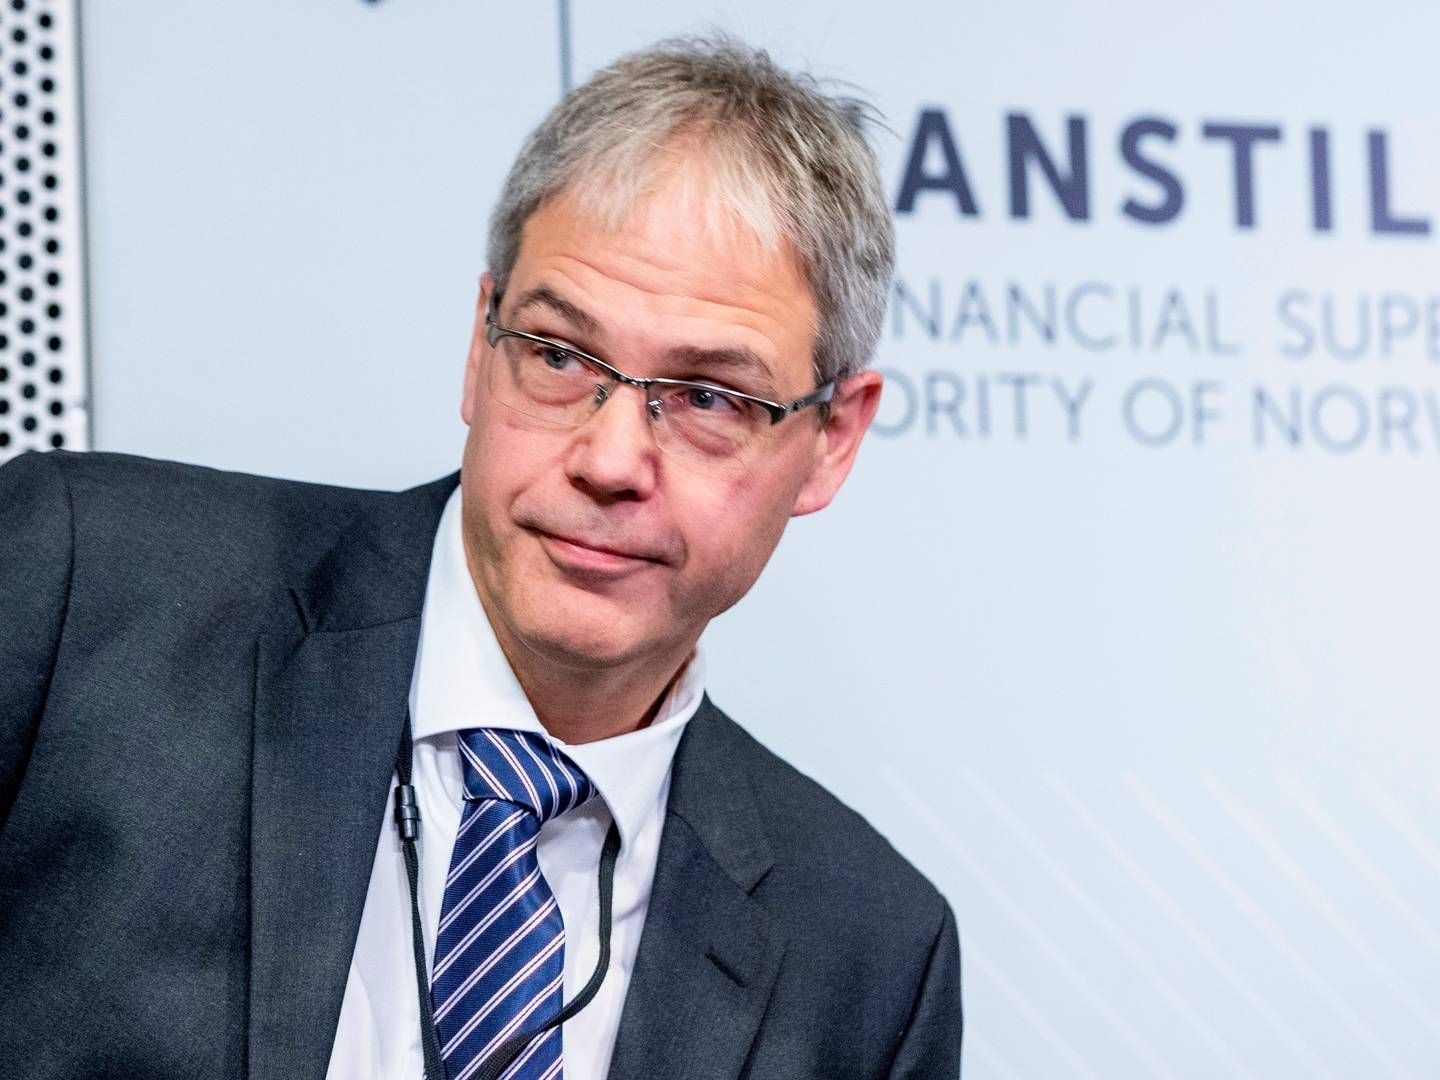 SØKER: Per Mathis Kongsrud må sies å være favoritt til stillingen som ny Finanstilsynsdirektør. | Foto: Stian Lysberg Solum / NTB